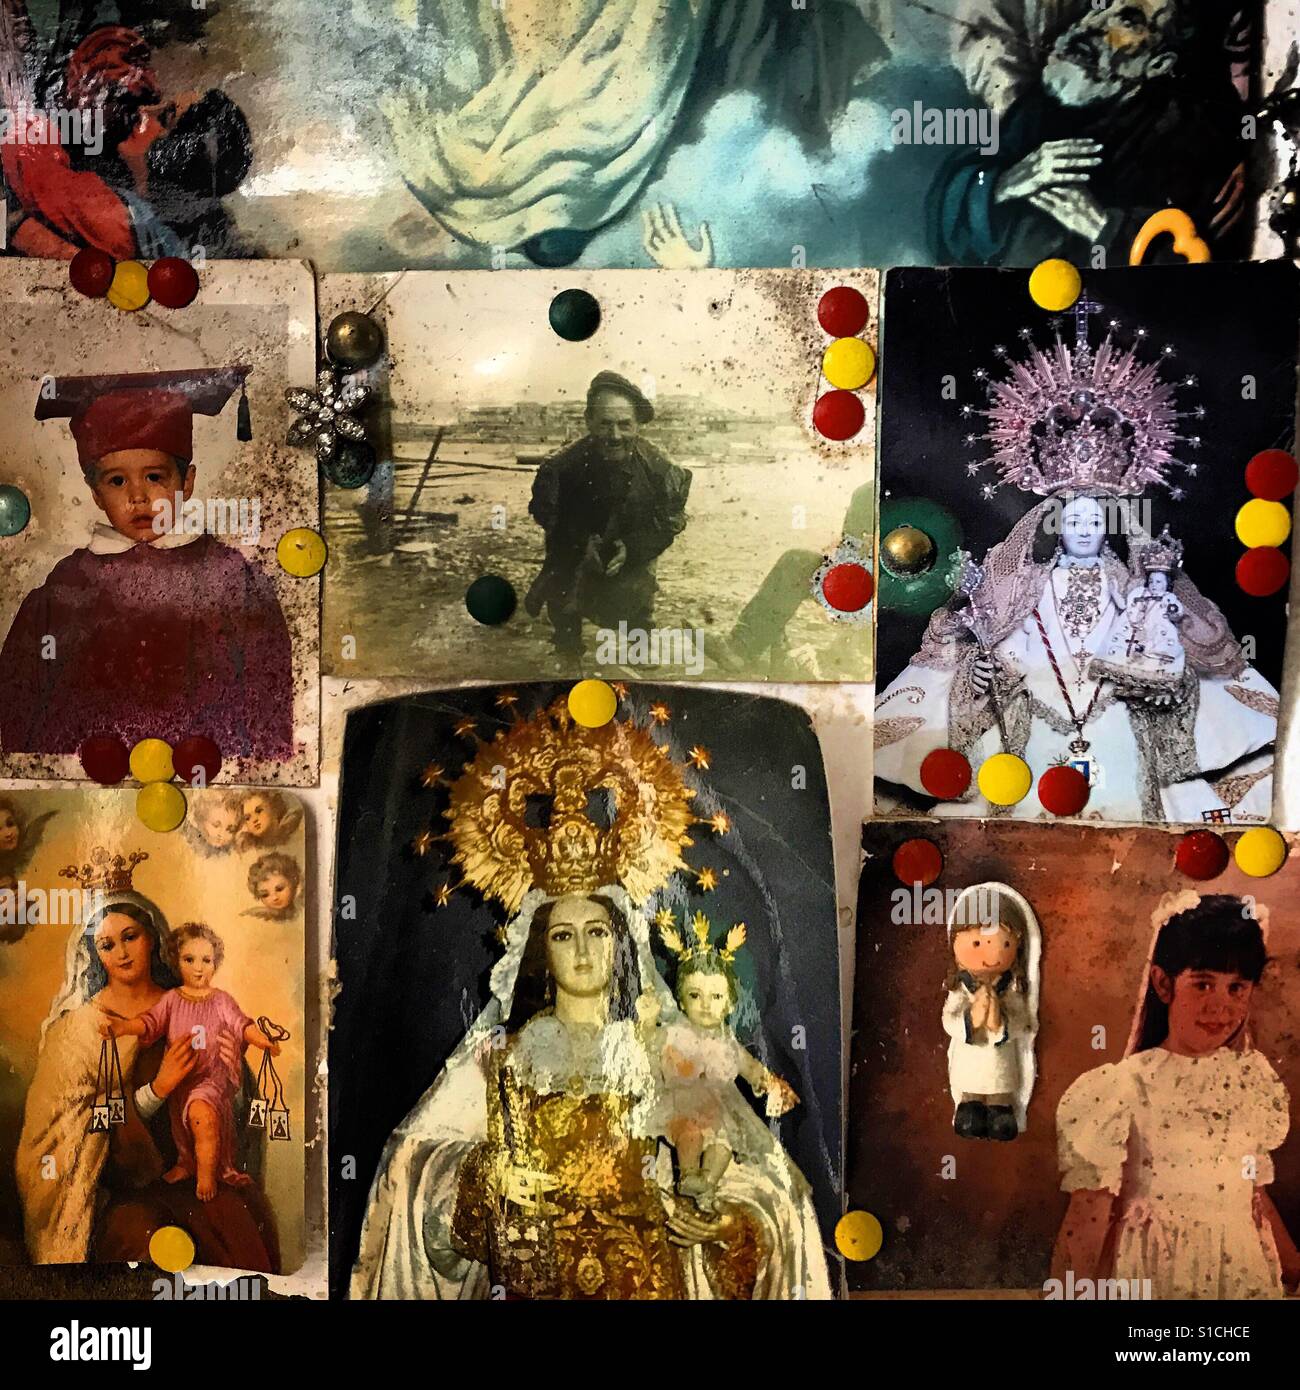 Porträts und Bilder der Jungfrau Maria schmücken ein Bankrott Restaurant im Prado del Rey, Sierra de Cadiz, Andalusien, Spanien Stockfoto